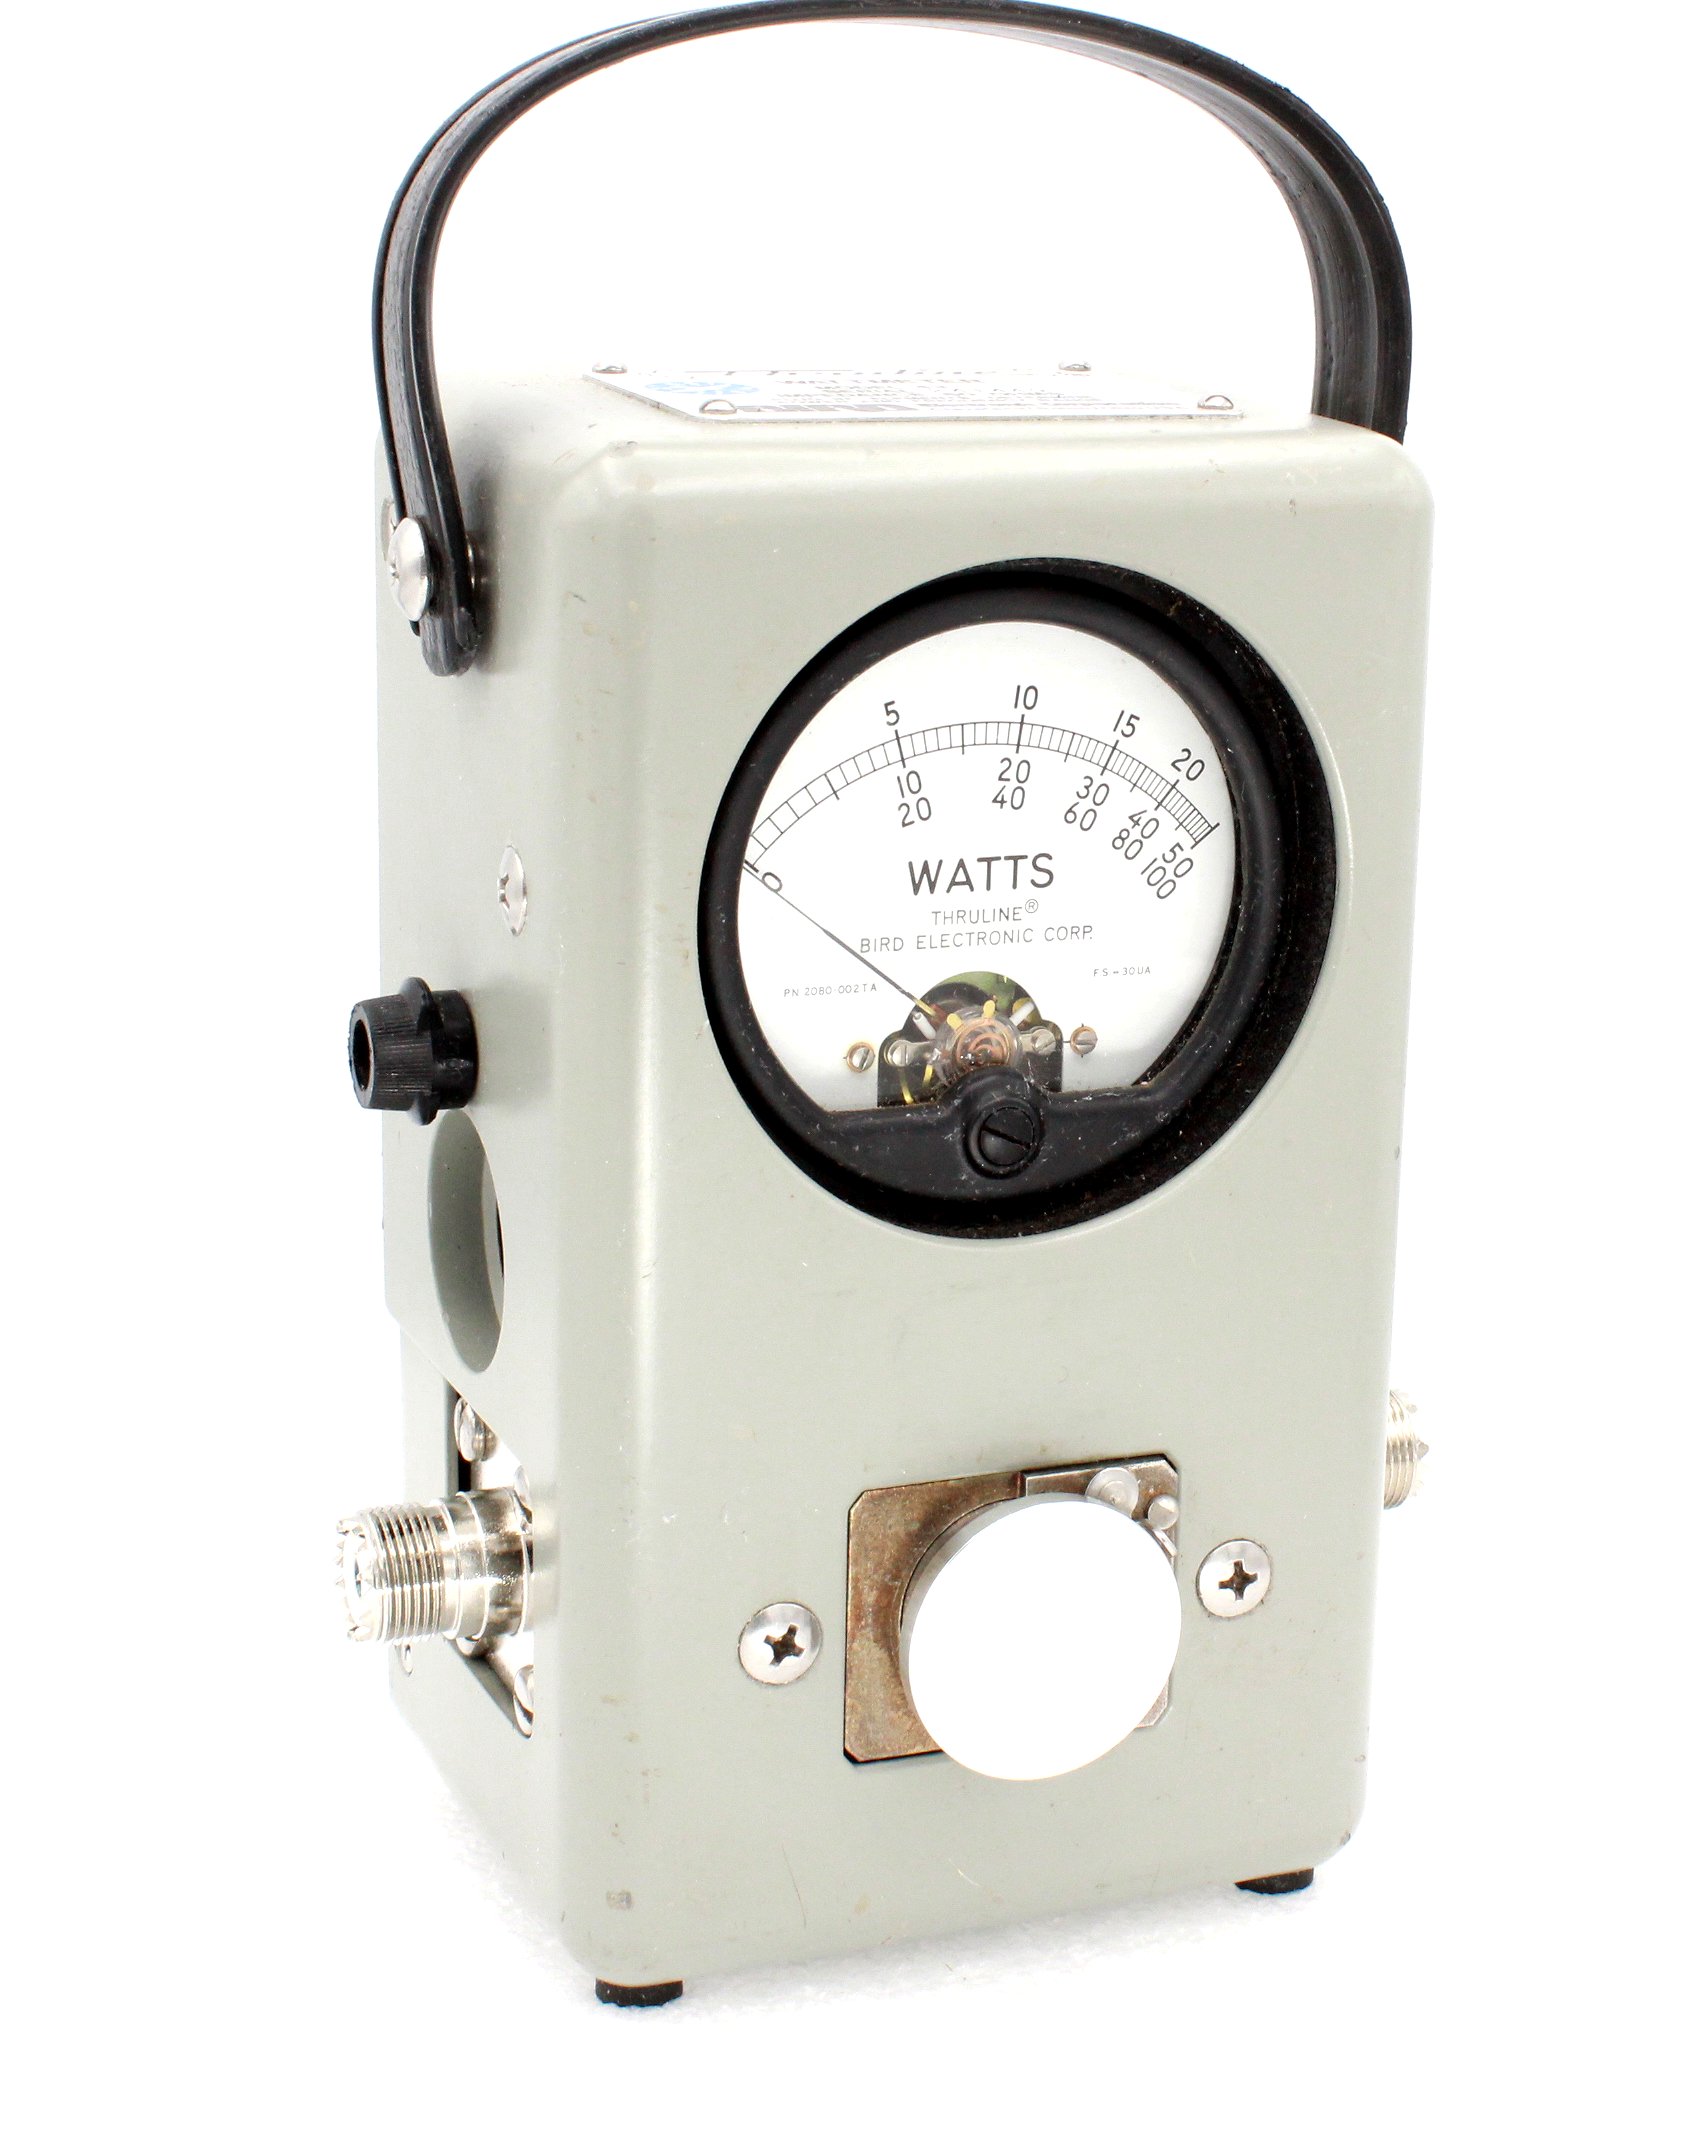 Bird 43 Thruline RF Wattmeter (Used) In Excellent Condition #241445 Bird 43 Wattmeter Used